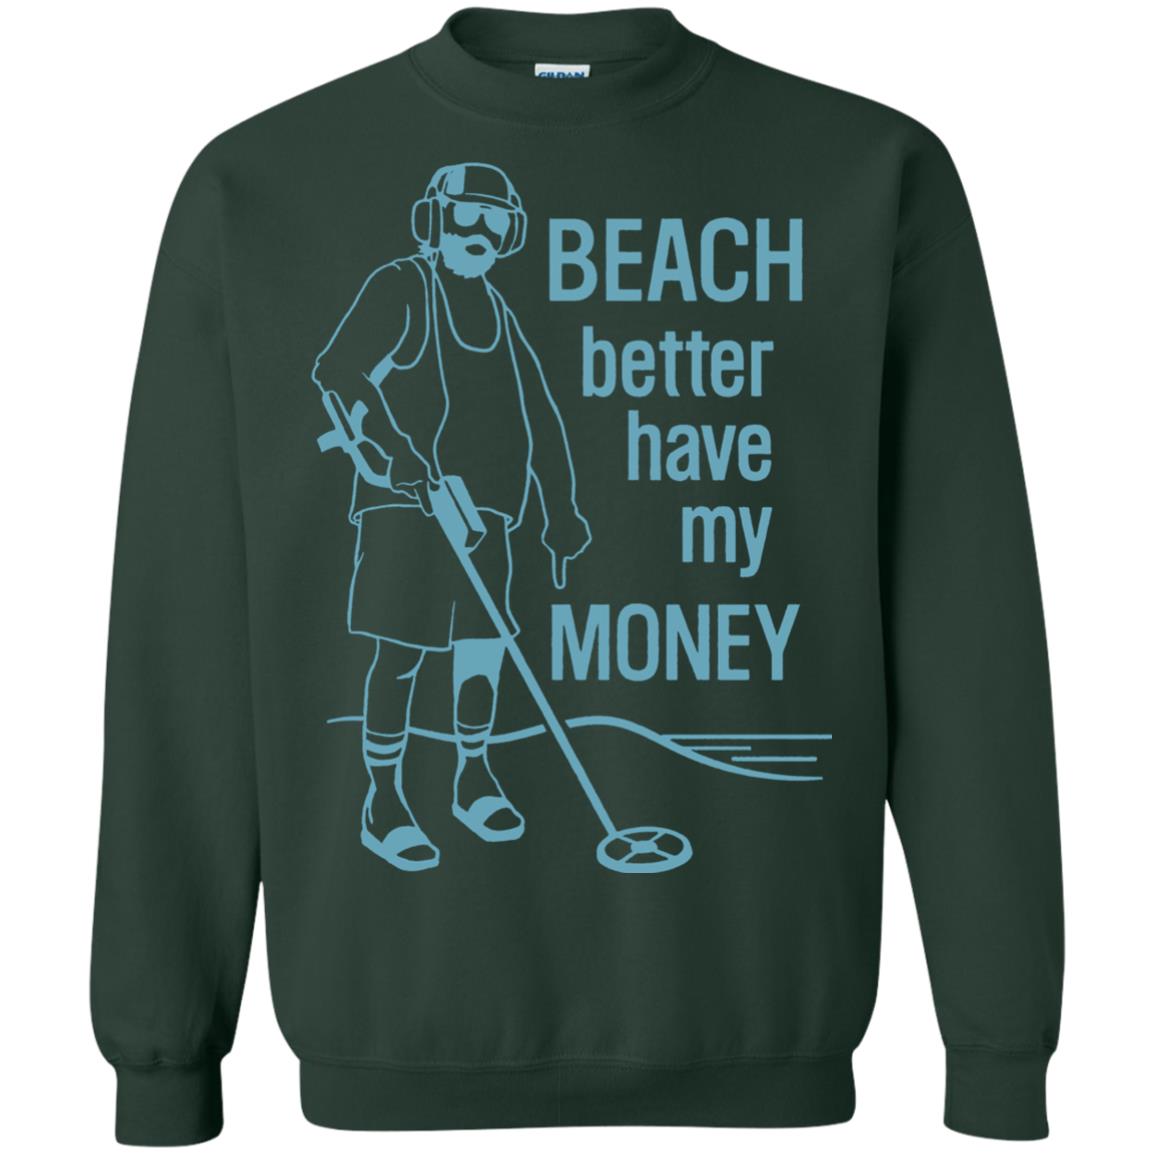 beach better have my money sweatshirt - forest green